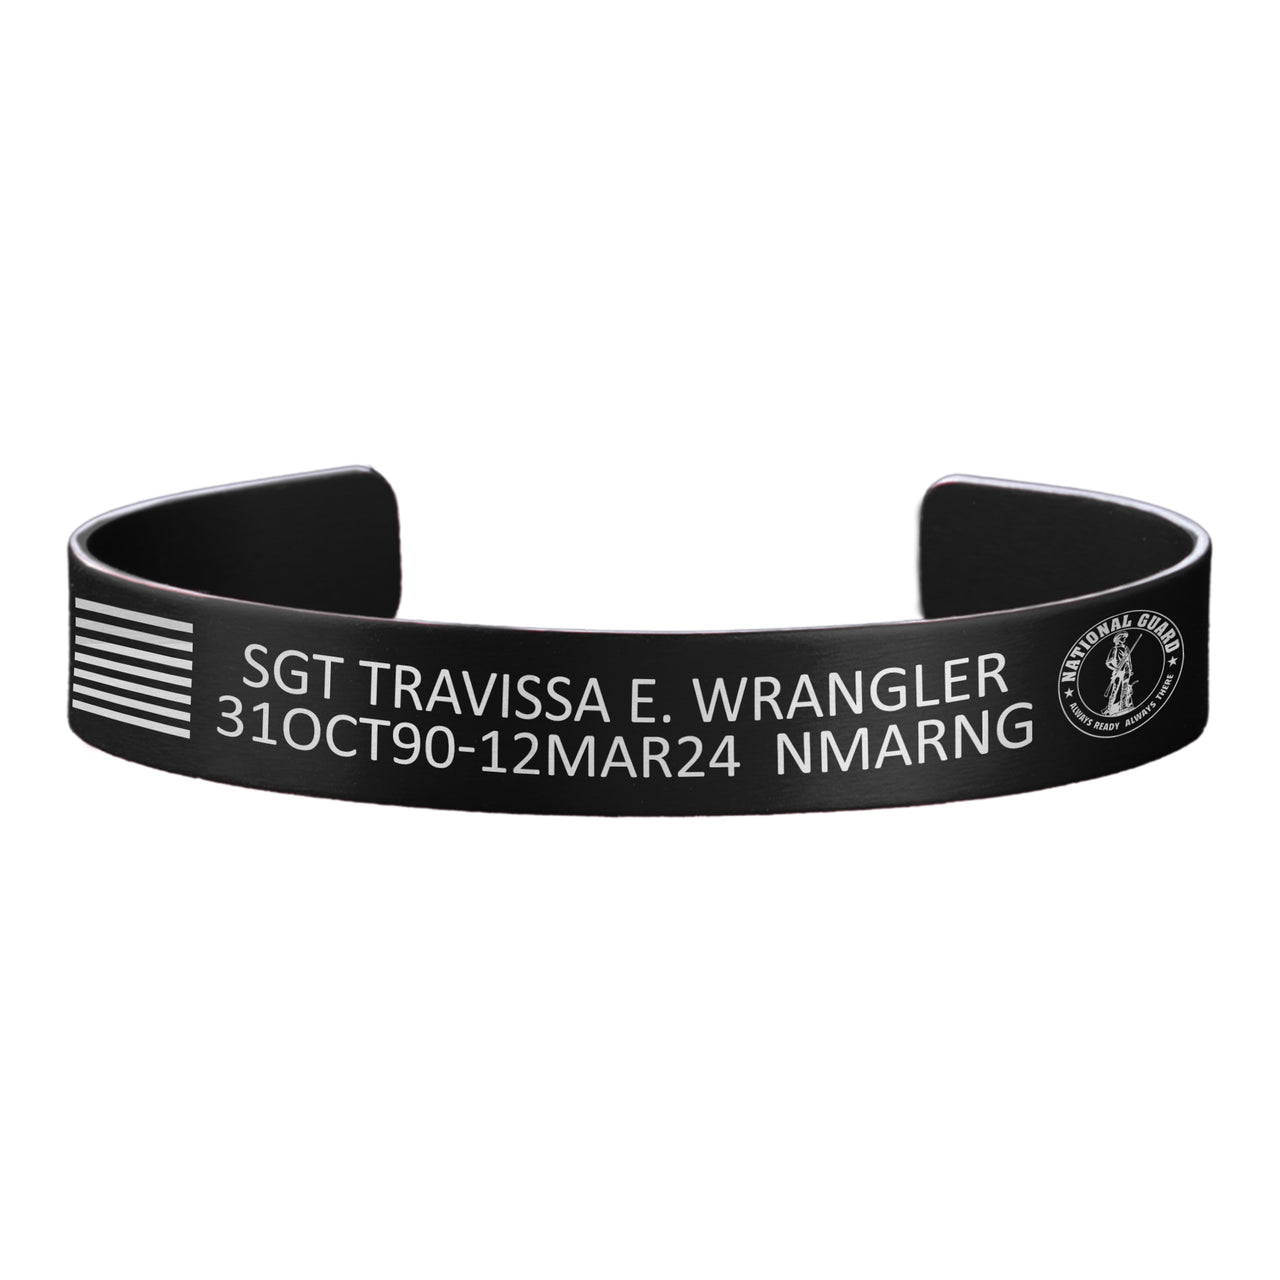 SGT Travissa Wrangler Memorial Band – Hosted by the Wrangler Family